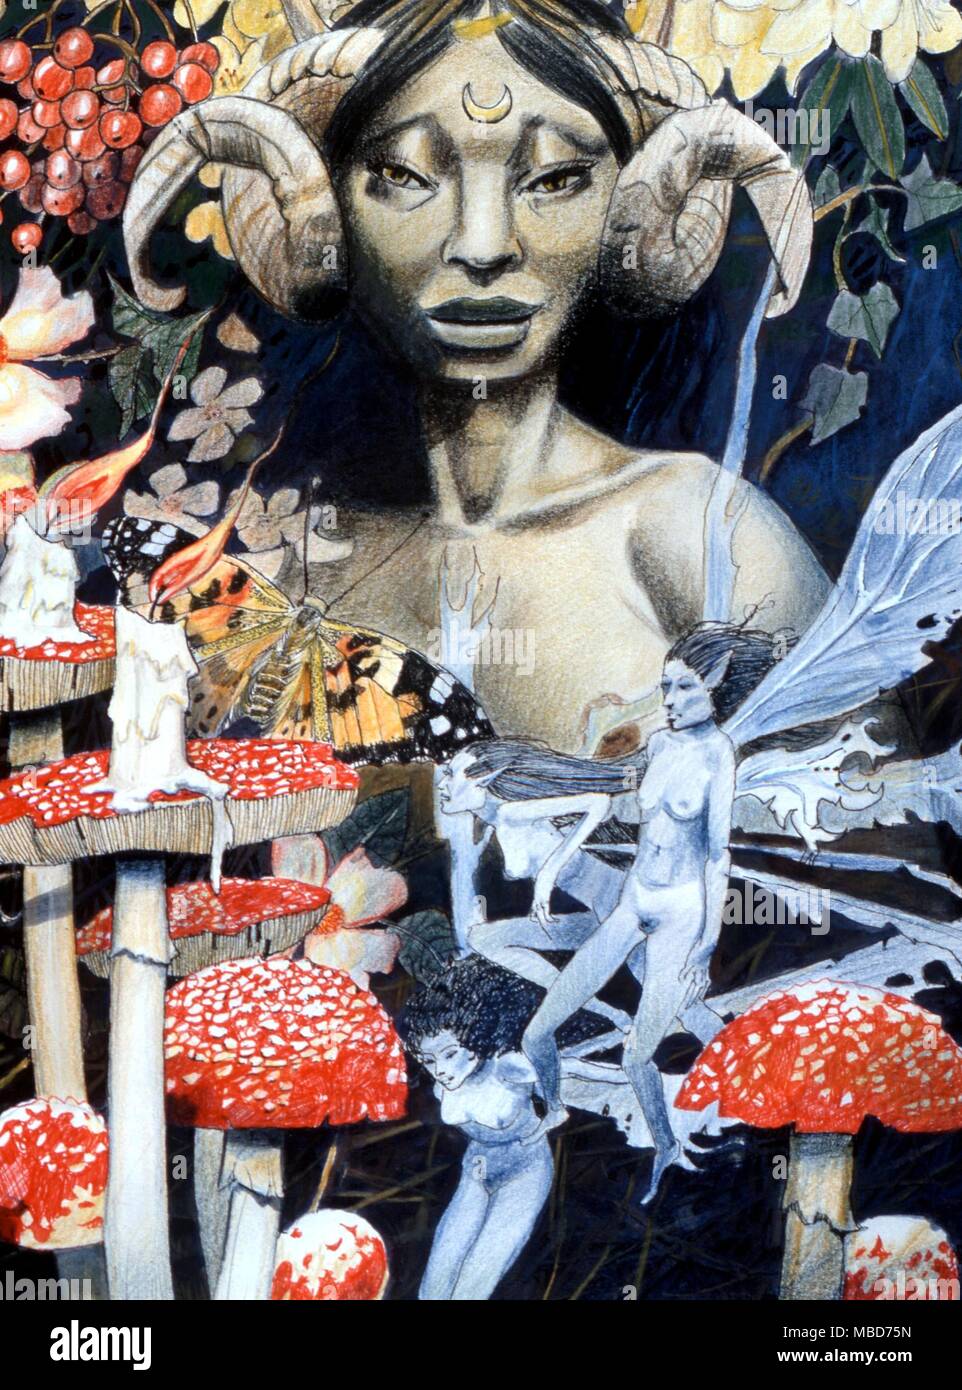 Feen - Mutter Erde, mit Fliegenpilzen, Feen und Kerzen. Malerei in Aquarell, Gouache, Bleistift und Tinte, von Gordon Wain, "Mutter Erde", 1991. Stockfoto